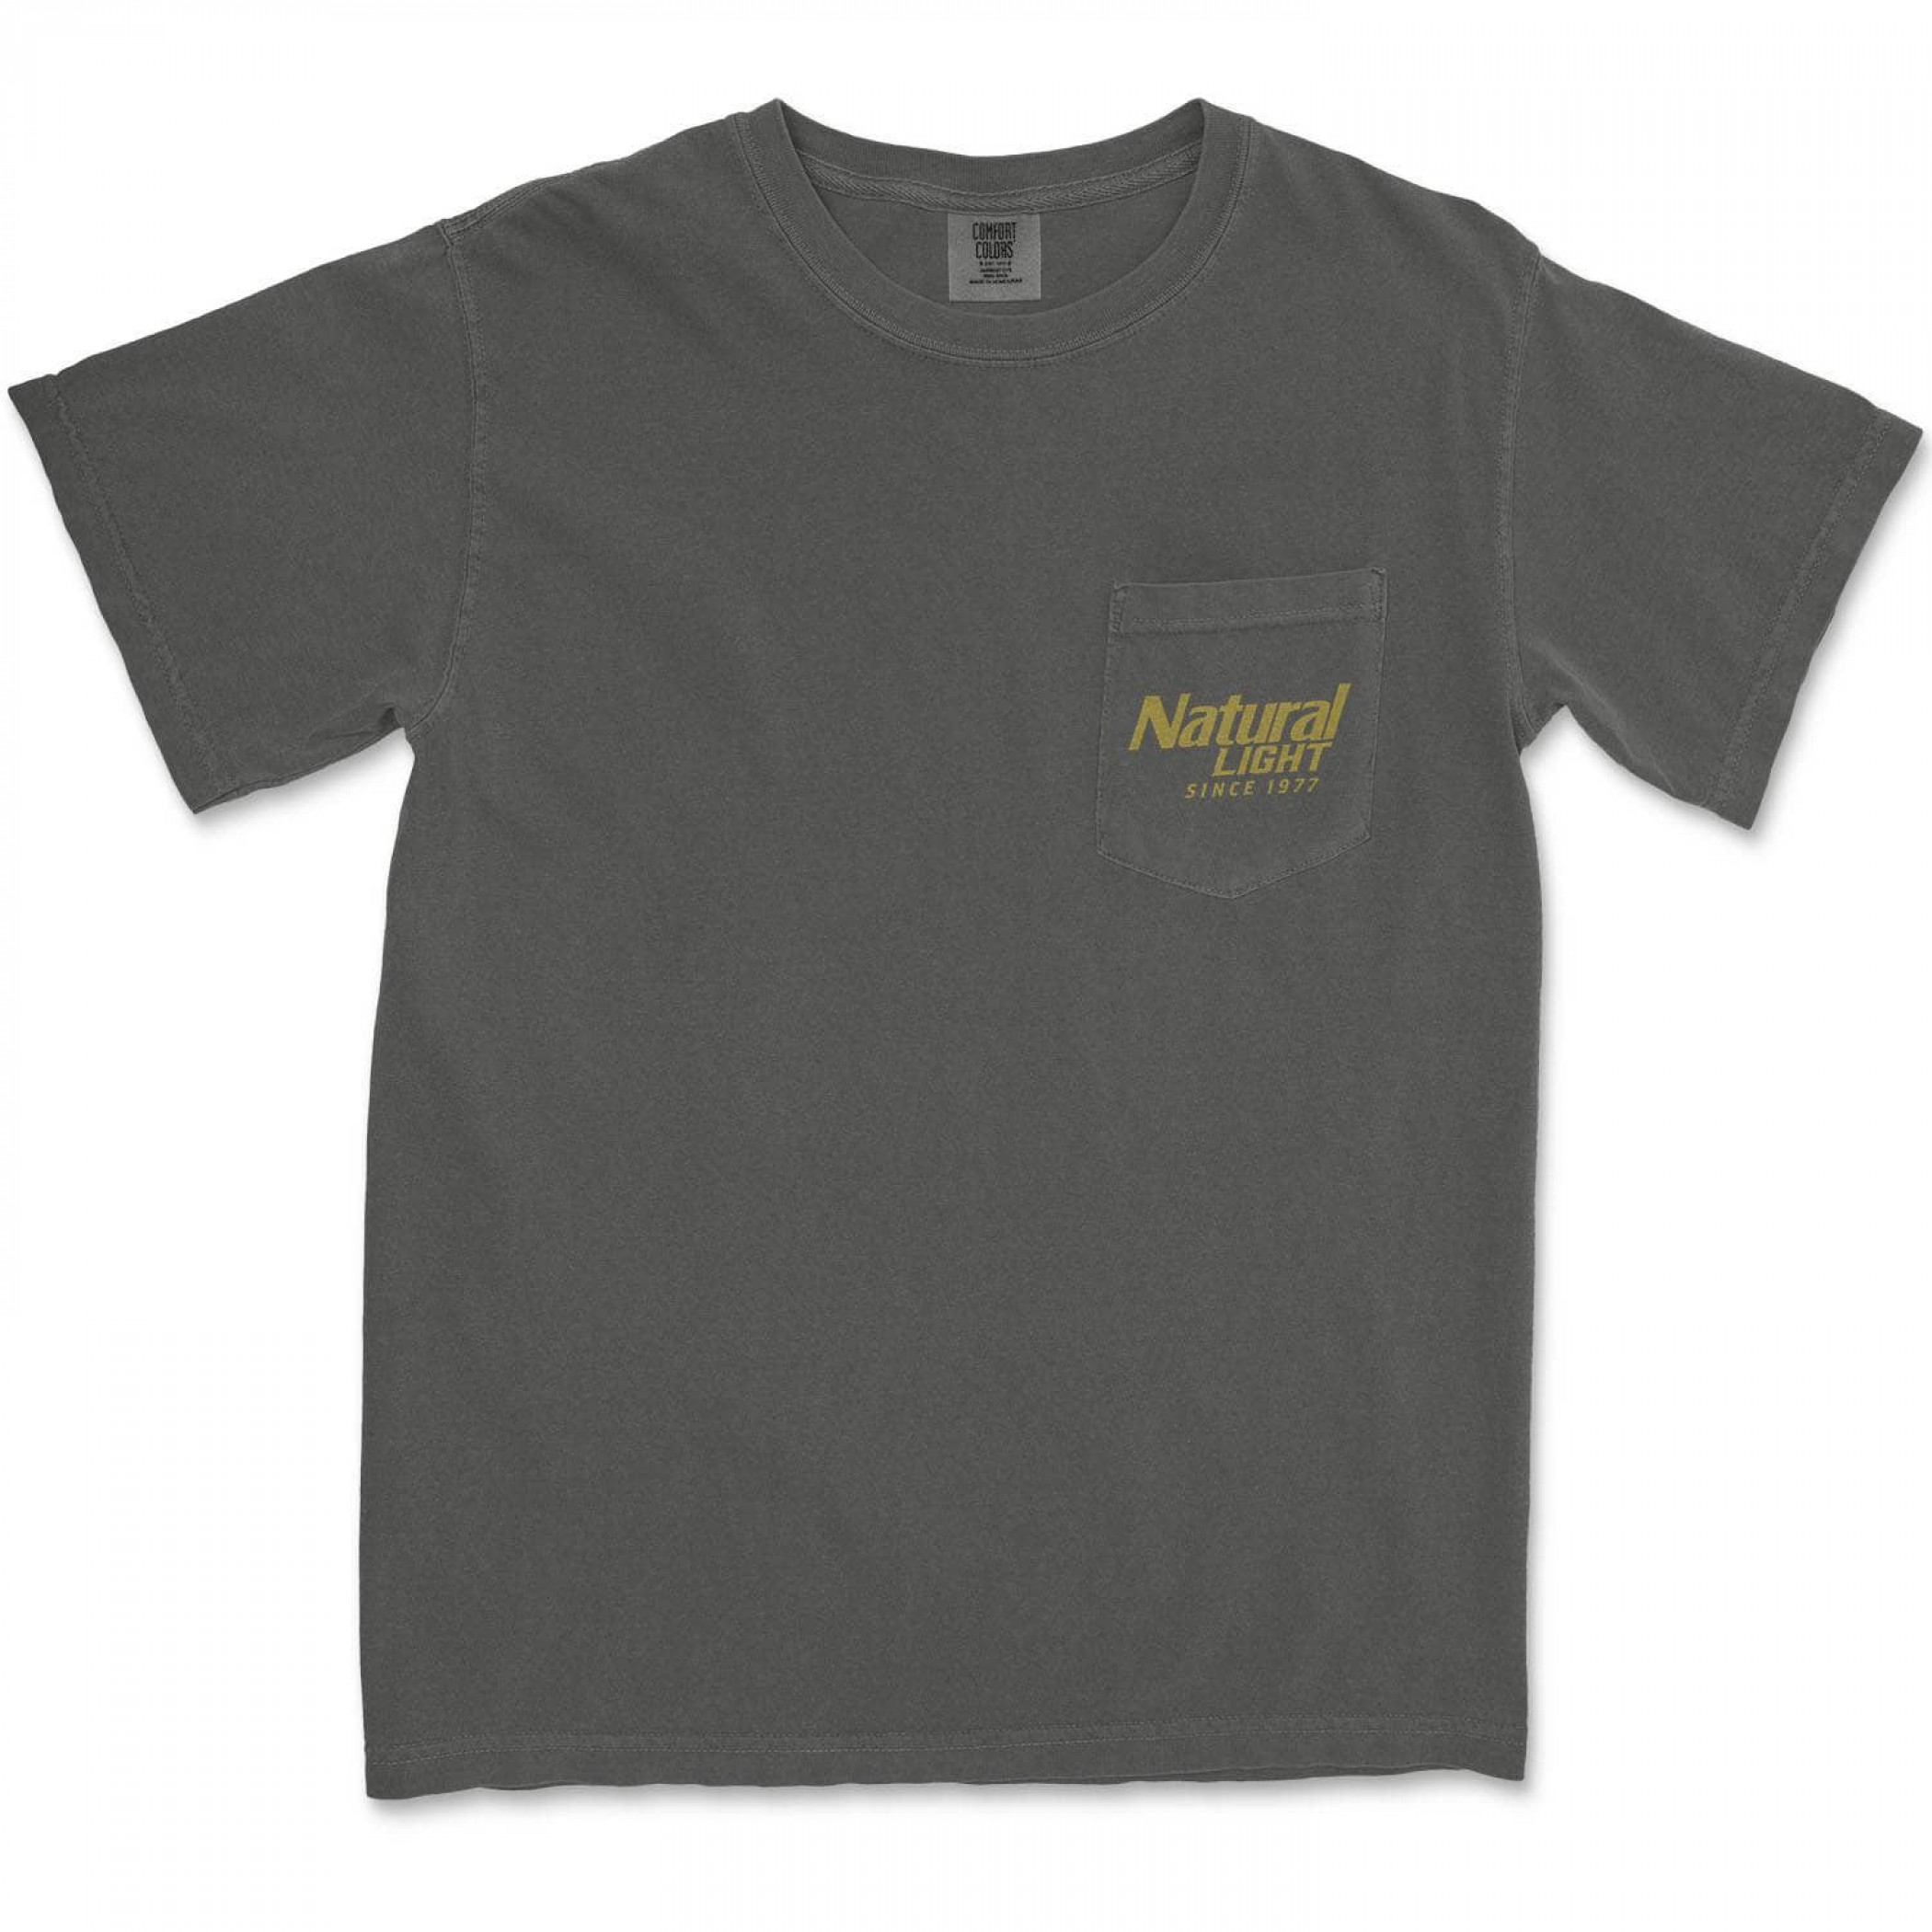 Natural Light Since 1977 Rowdy Gentleman Pocket T-Shirt